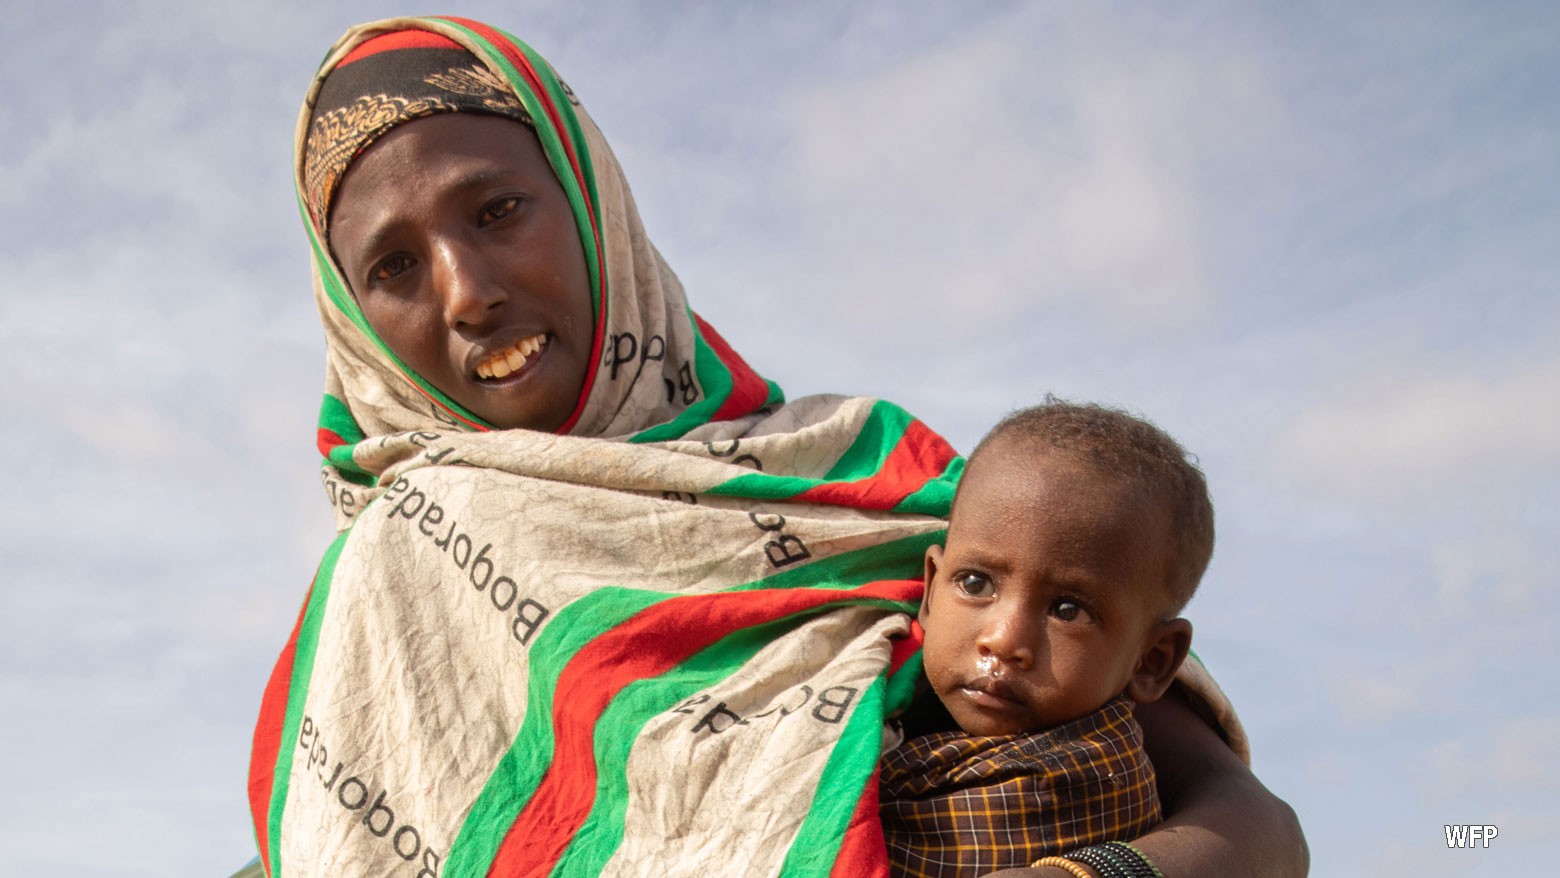 Somalia on the brink of famine